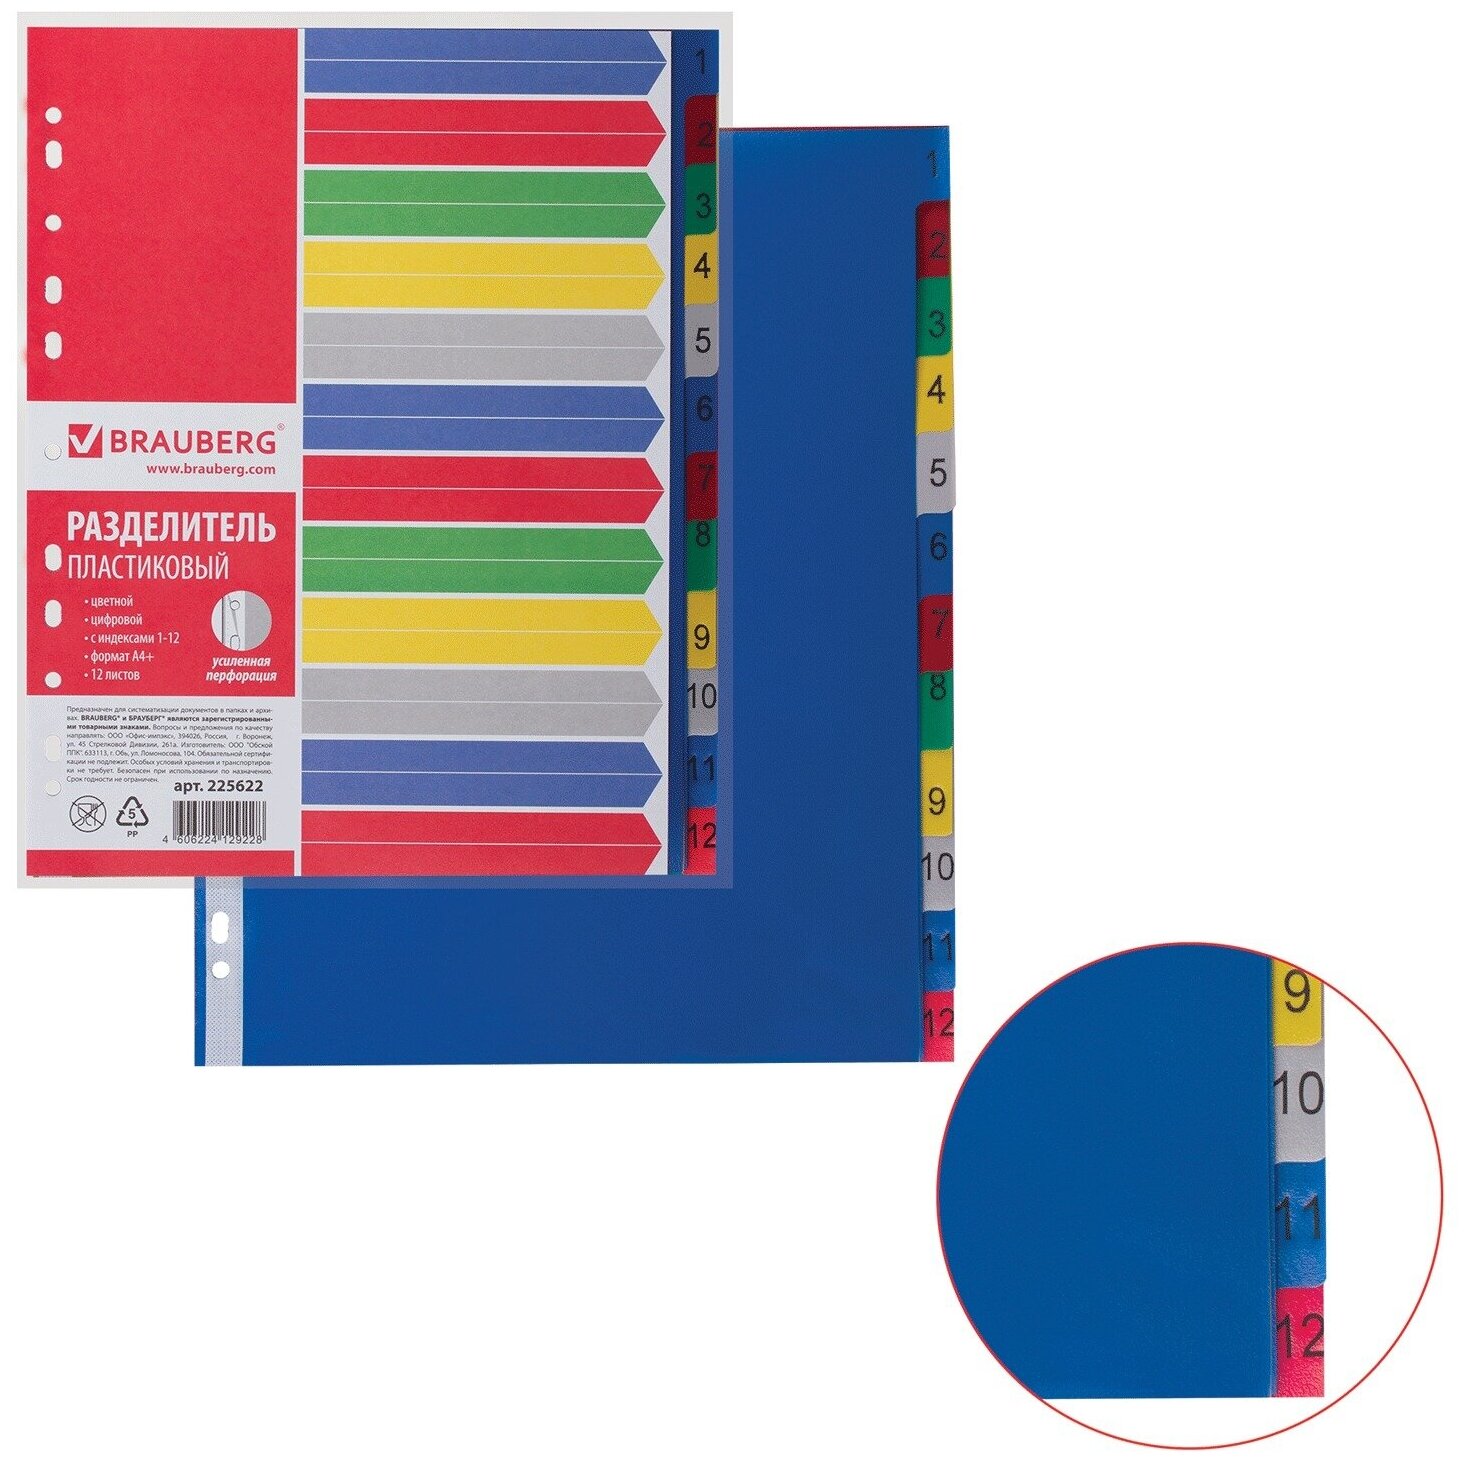 Разделитель пластиковый Brauberg А4+, 12 листов, цифровой 1-12, оглавление, цветной (225622)